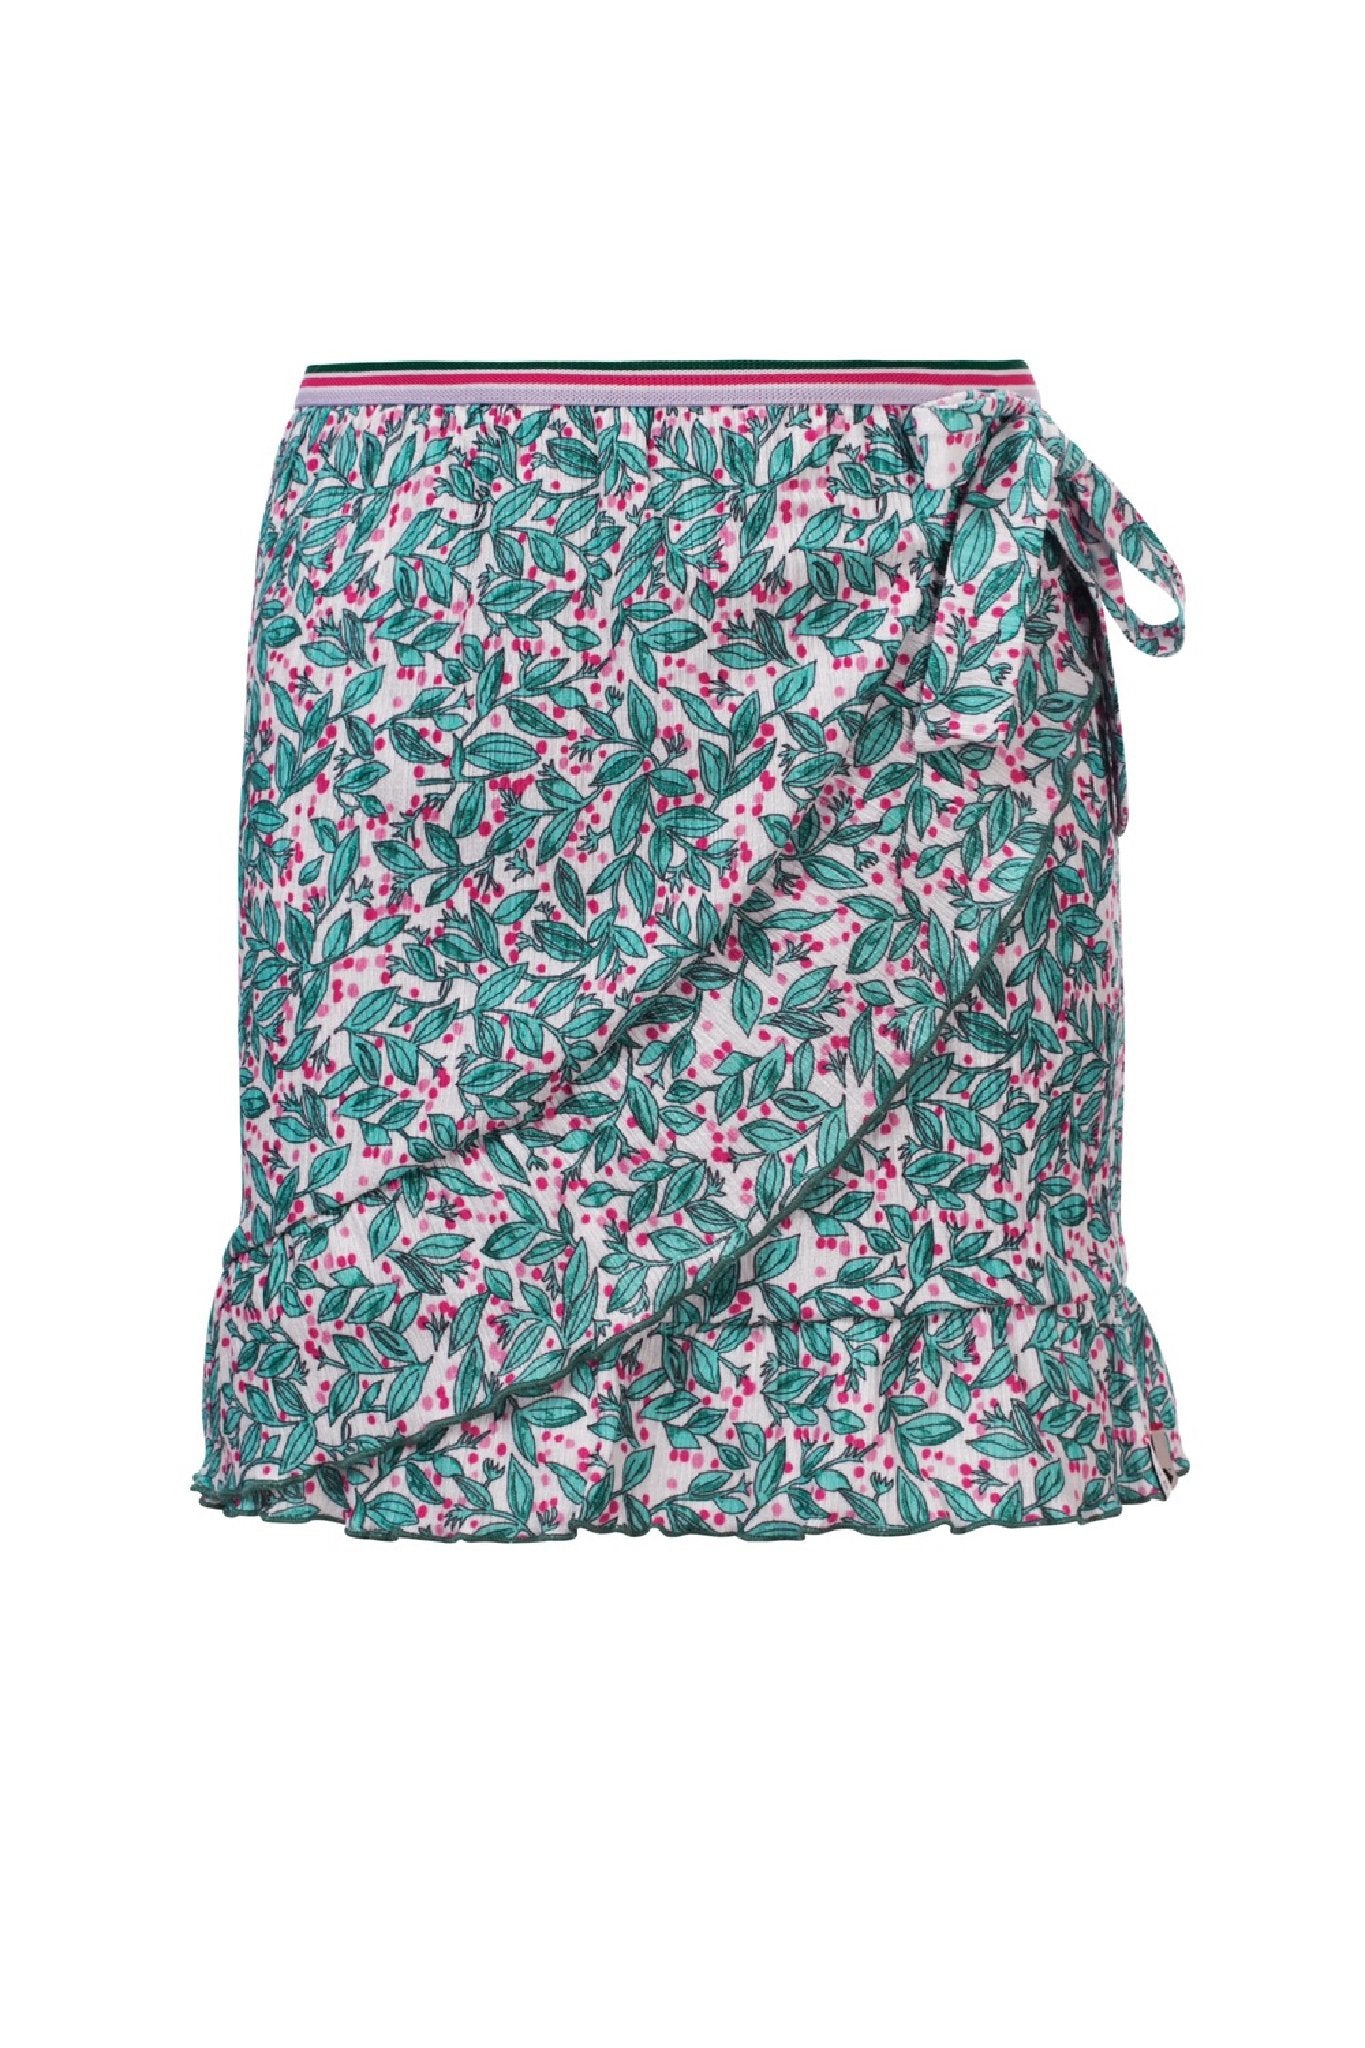 Meisjes Little woven  skirt ruffl van LOOXS Little in de kleur Bardot Stripe Y/D in maat 128.